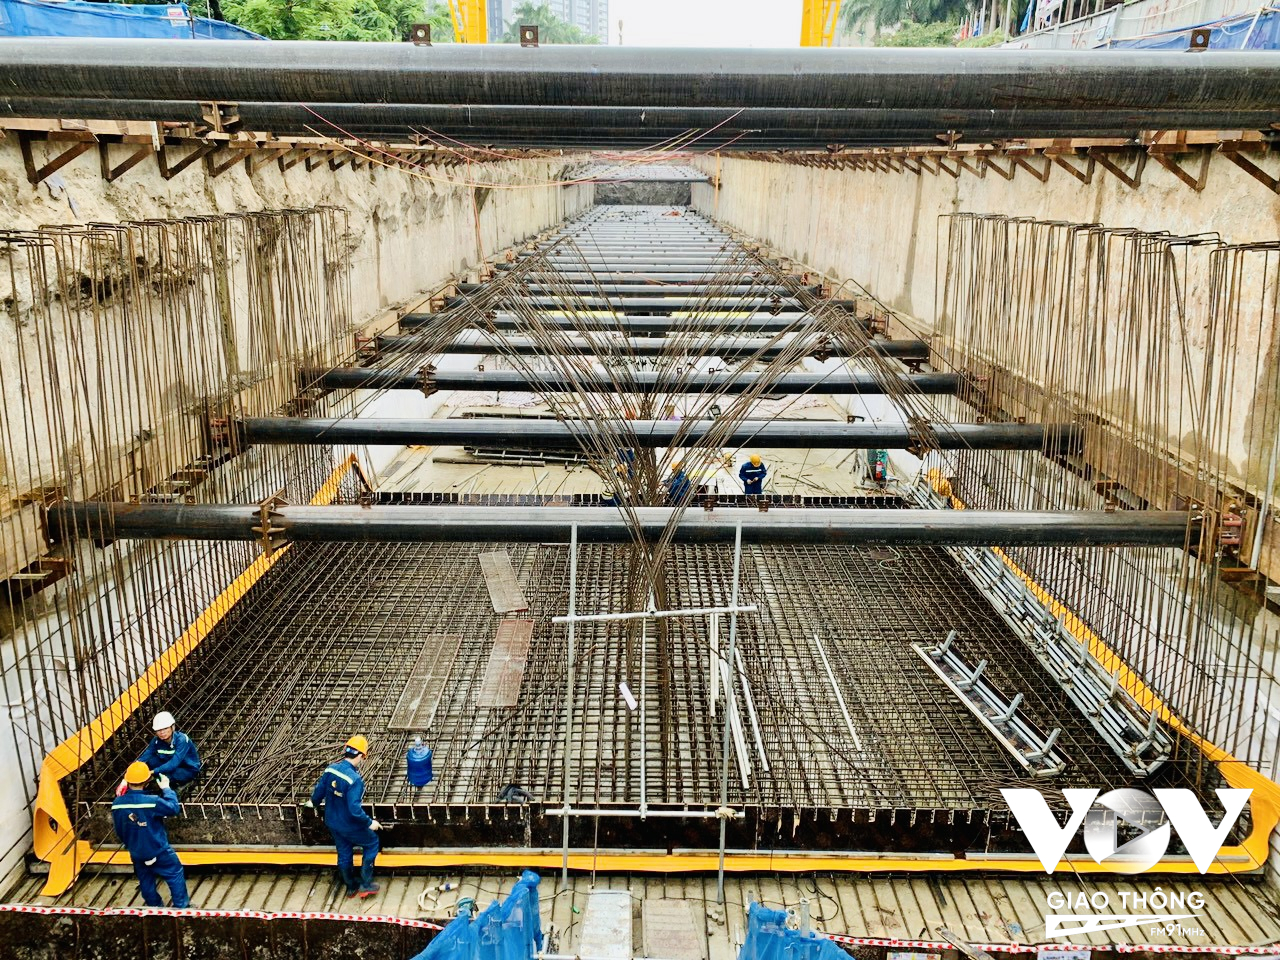 Trên công trường, công nhân và nhà thầu đang dồn tổng lực thi công để đưa dự án đầu tư xây dựng tuyến đường sắt đô thị Nhổn - ga Hà Nội về đích. Ảnh: Lê Huy